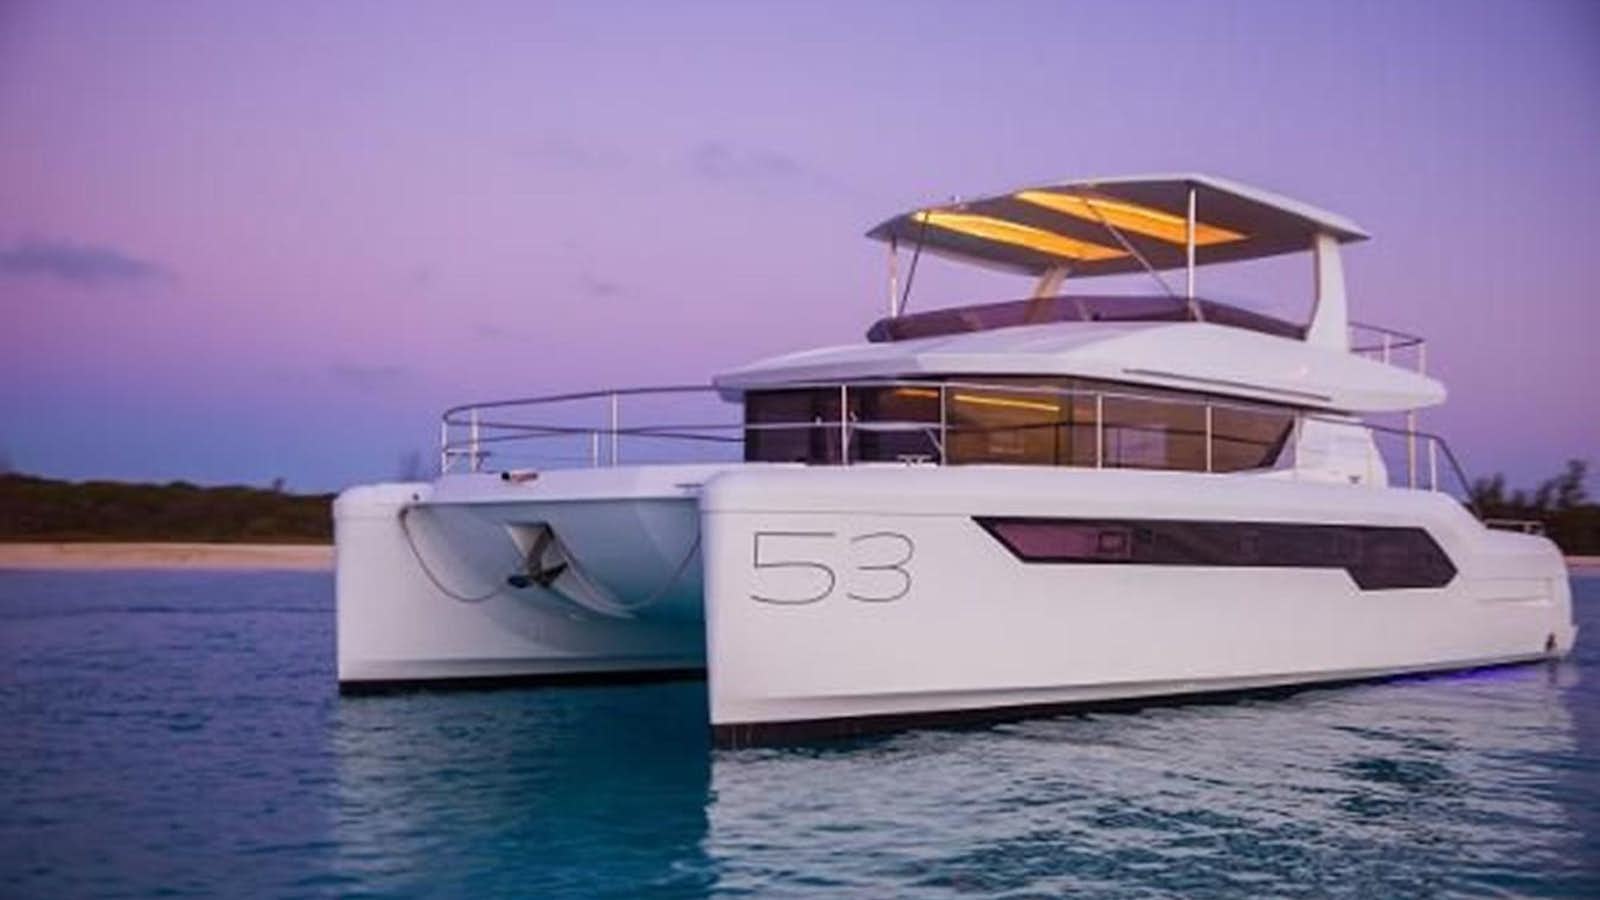 2023 leopard 53 powercat
Yacht for Sale